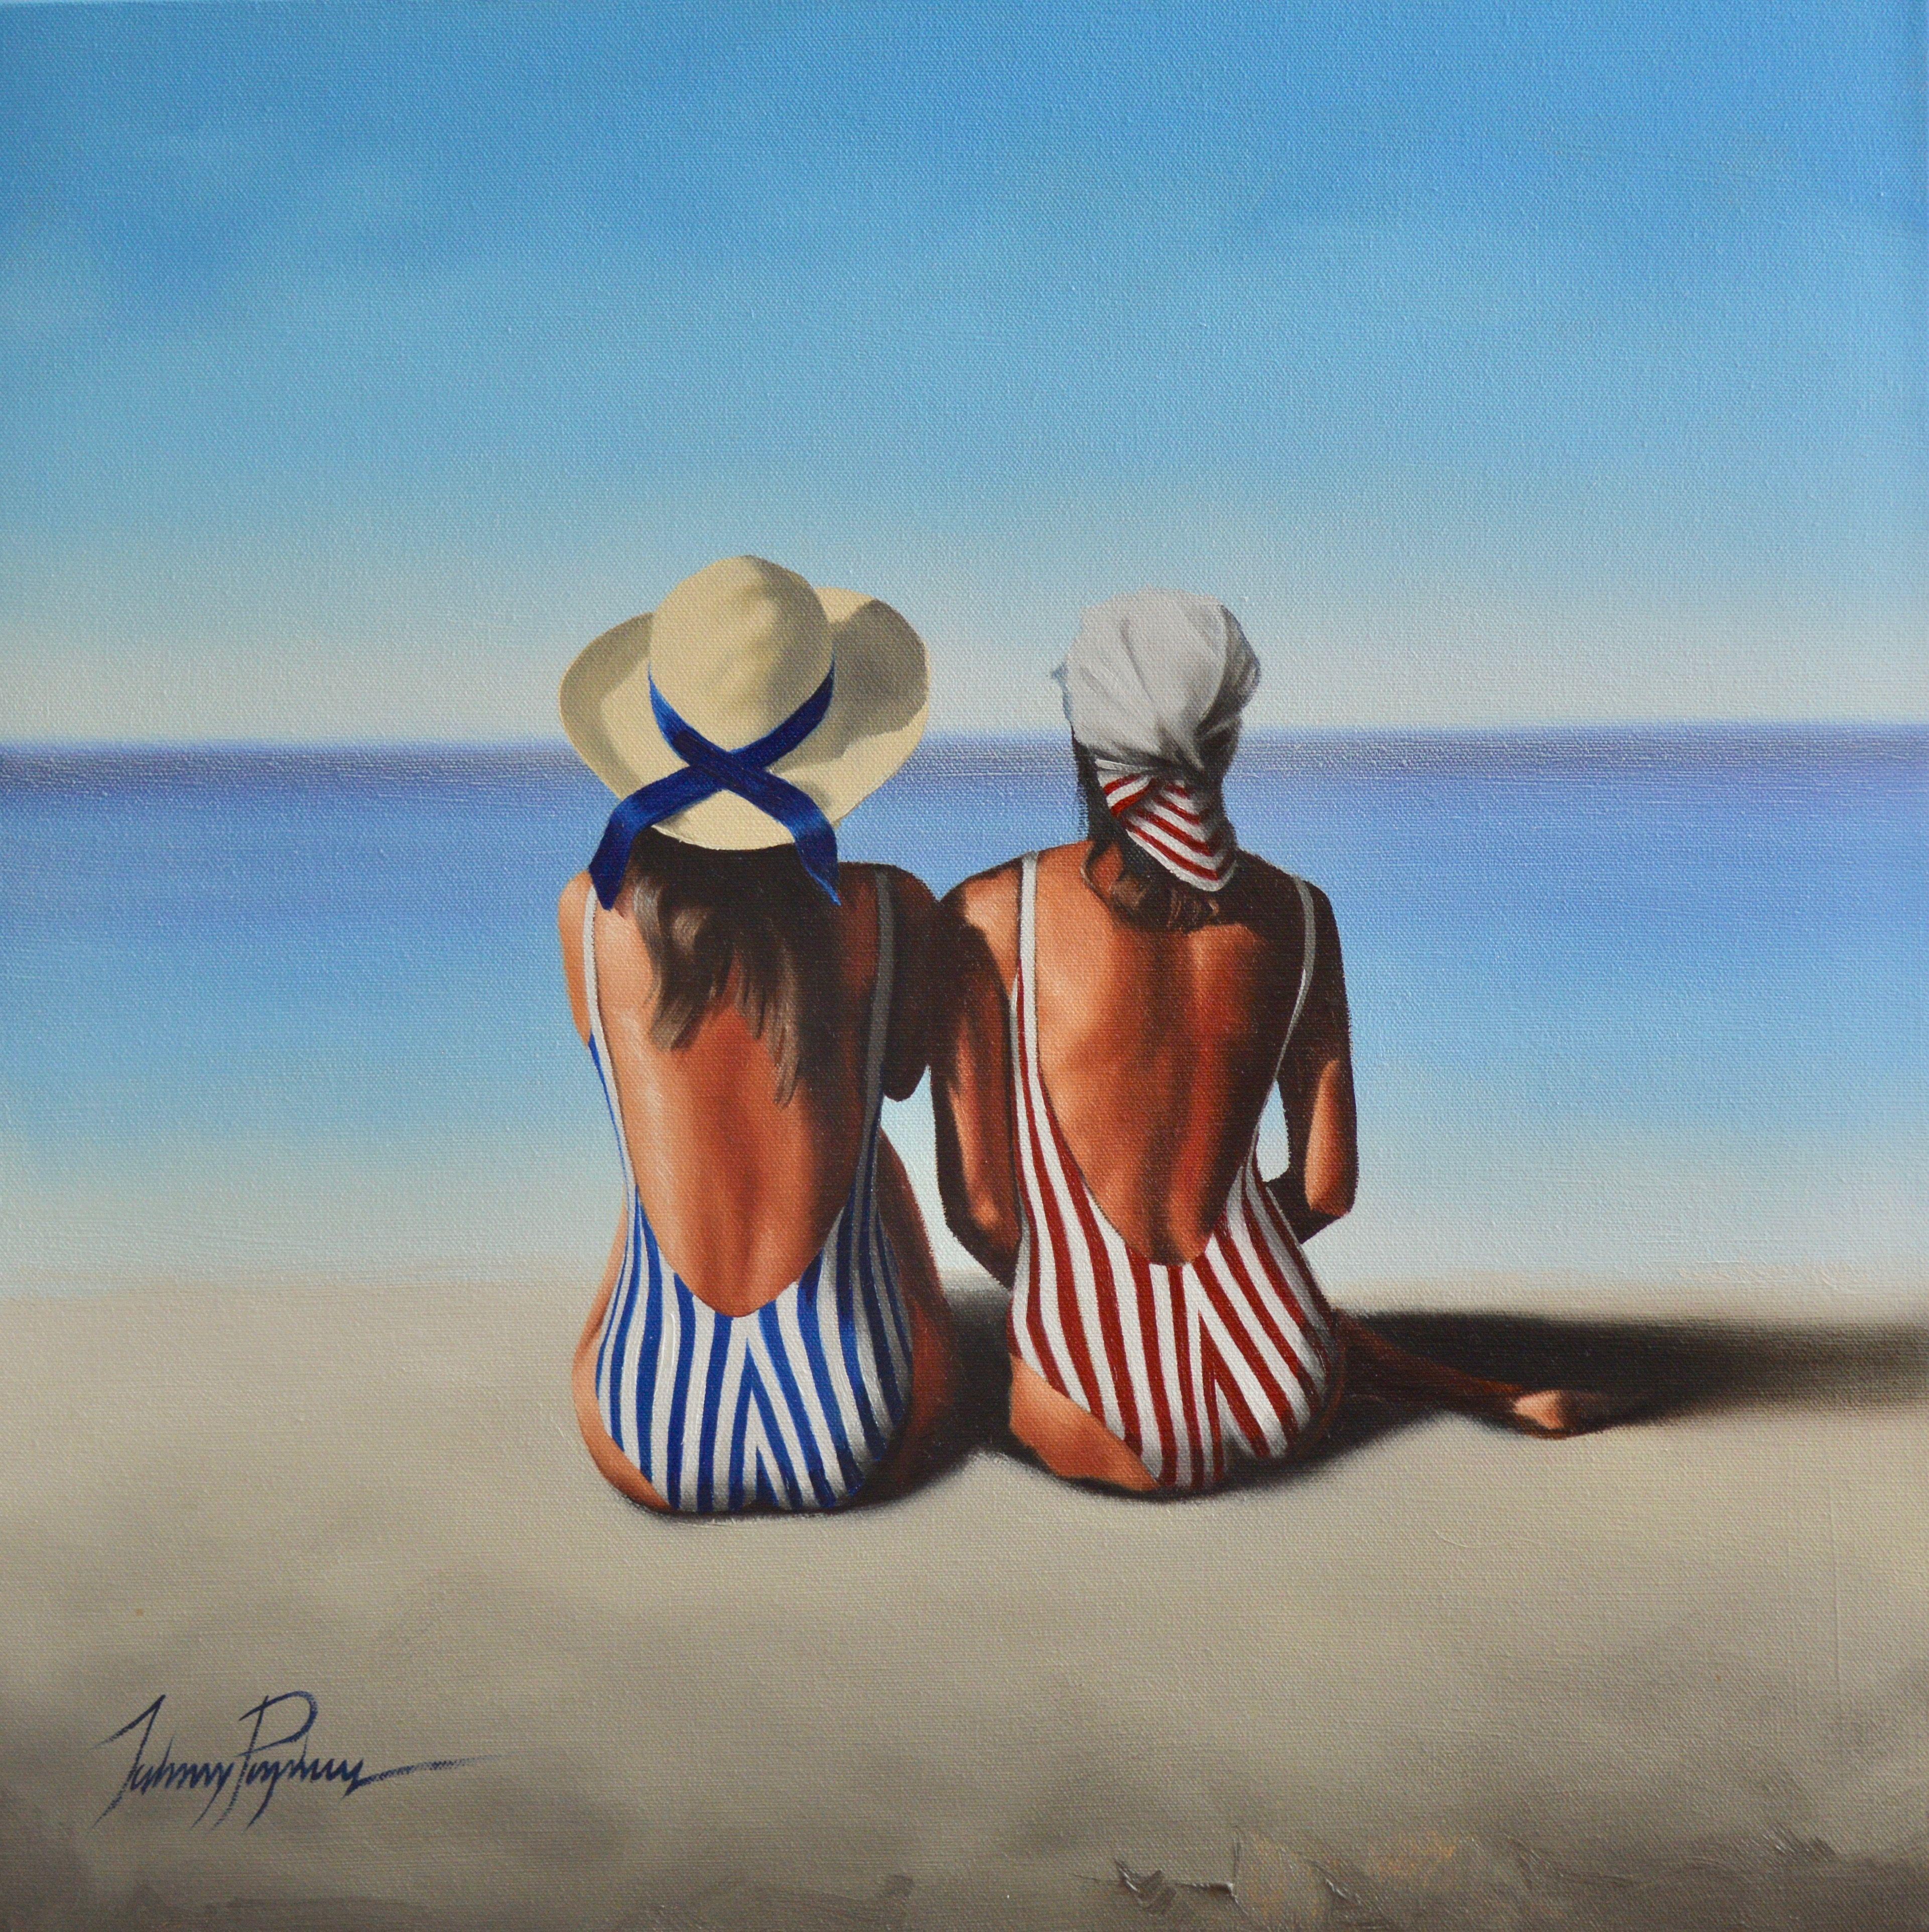 La plage, peinture à l'huile sur toile - Painting de John Popkess